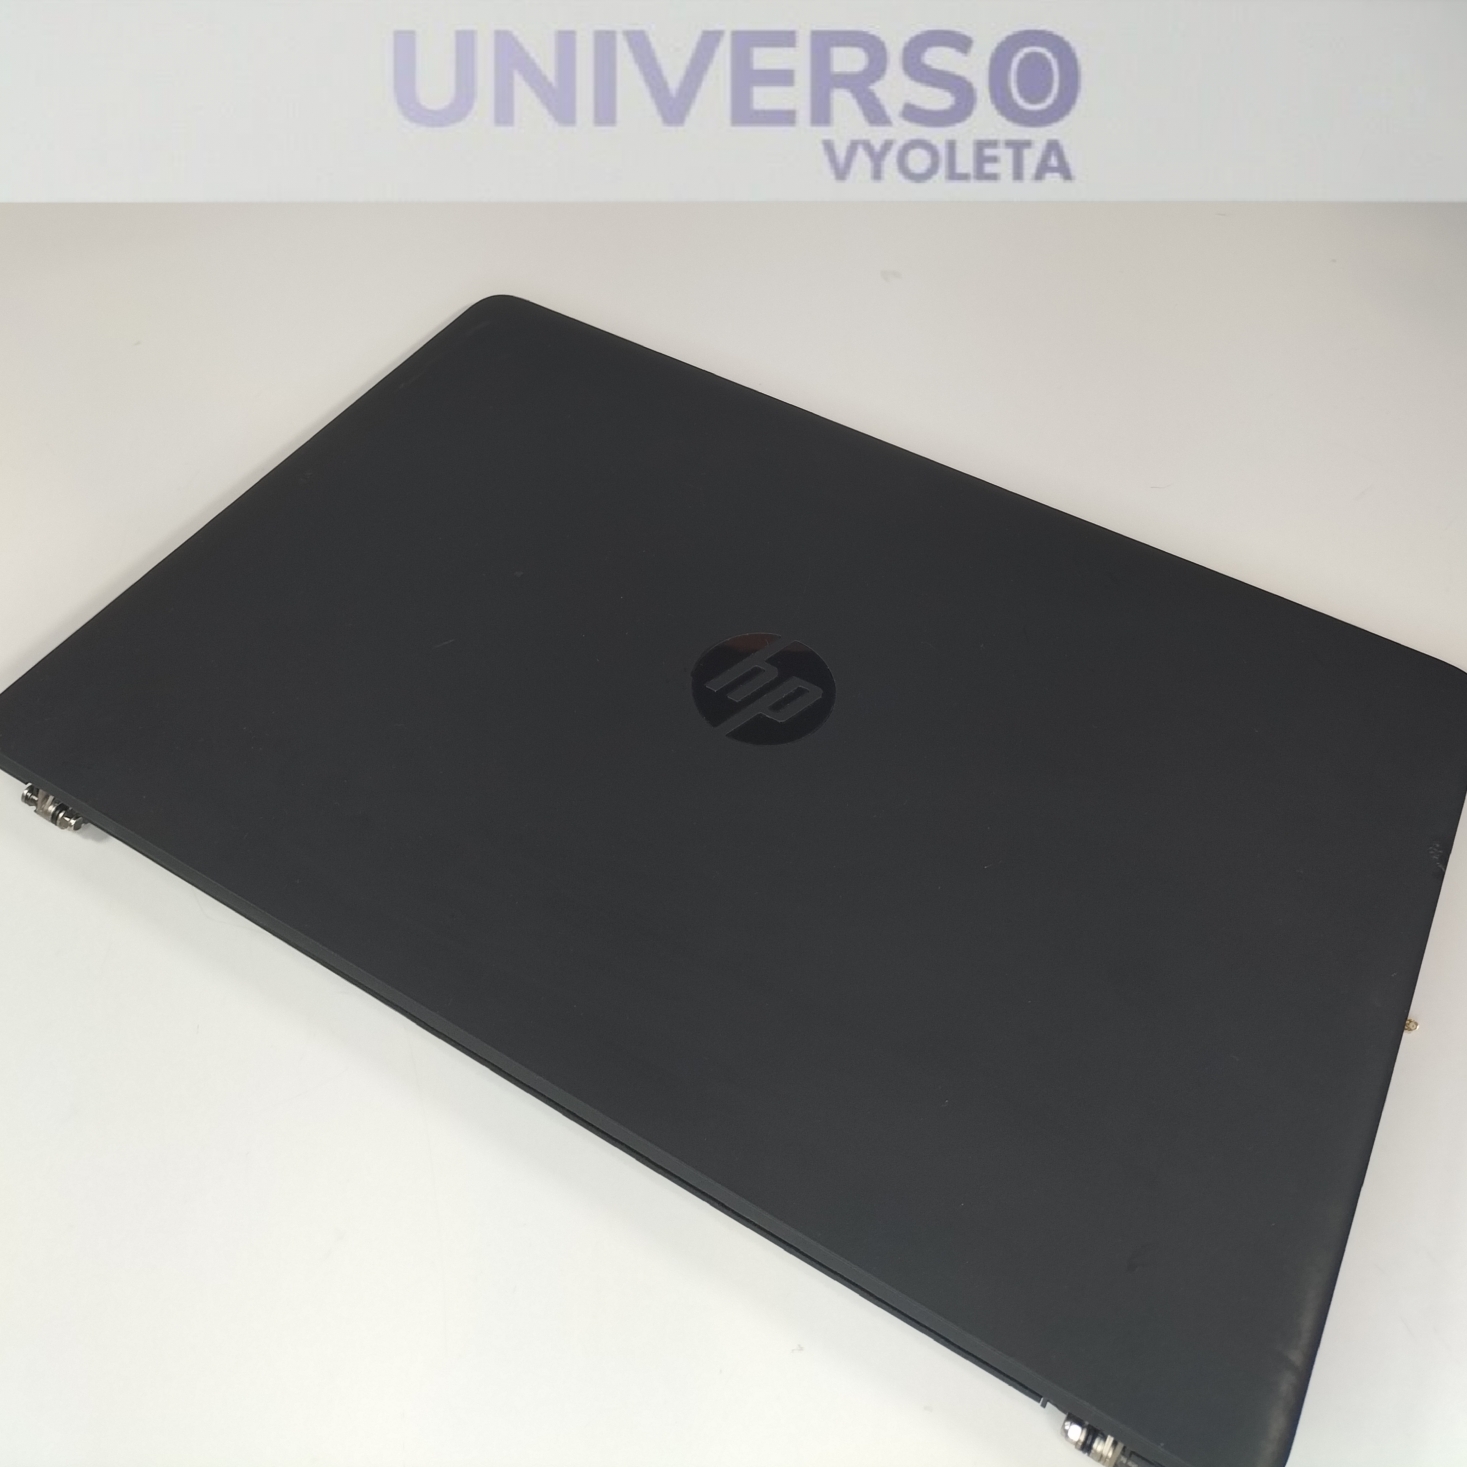 Carcasa superior HP ProBook 450 g1